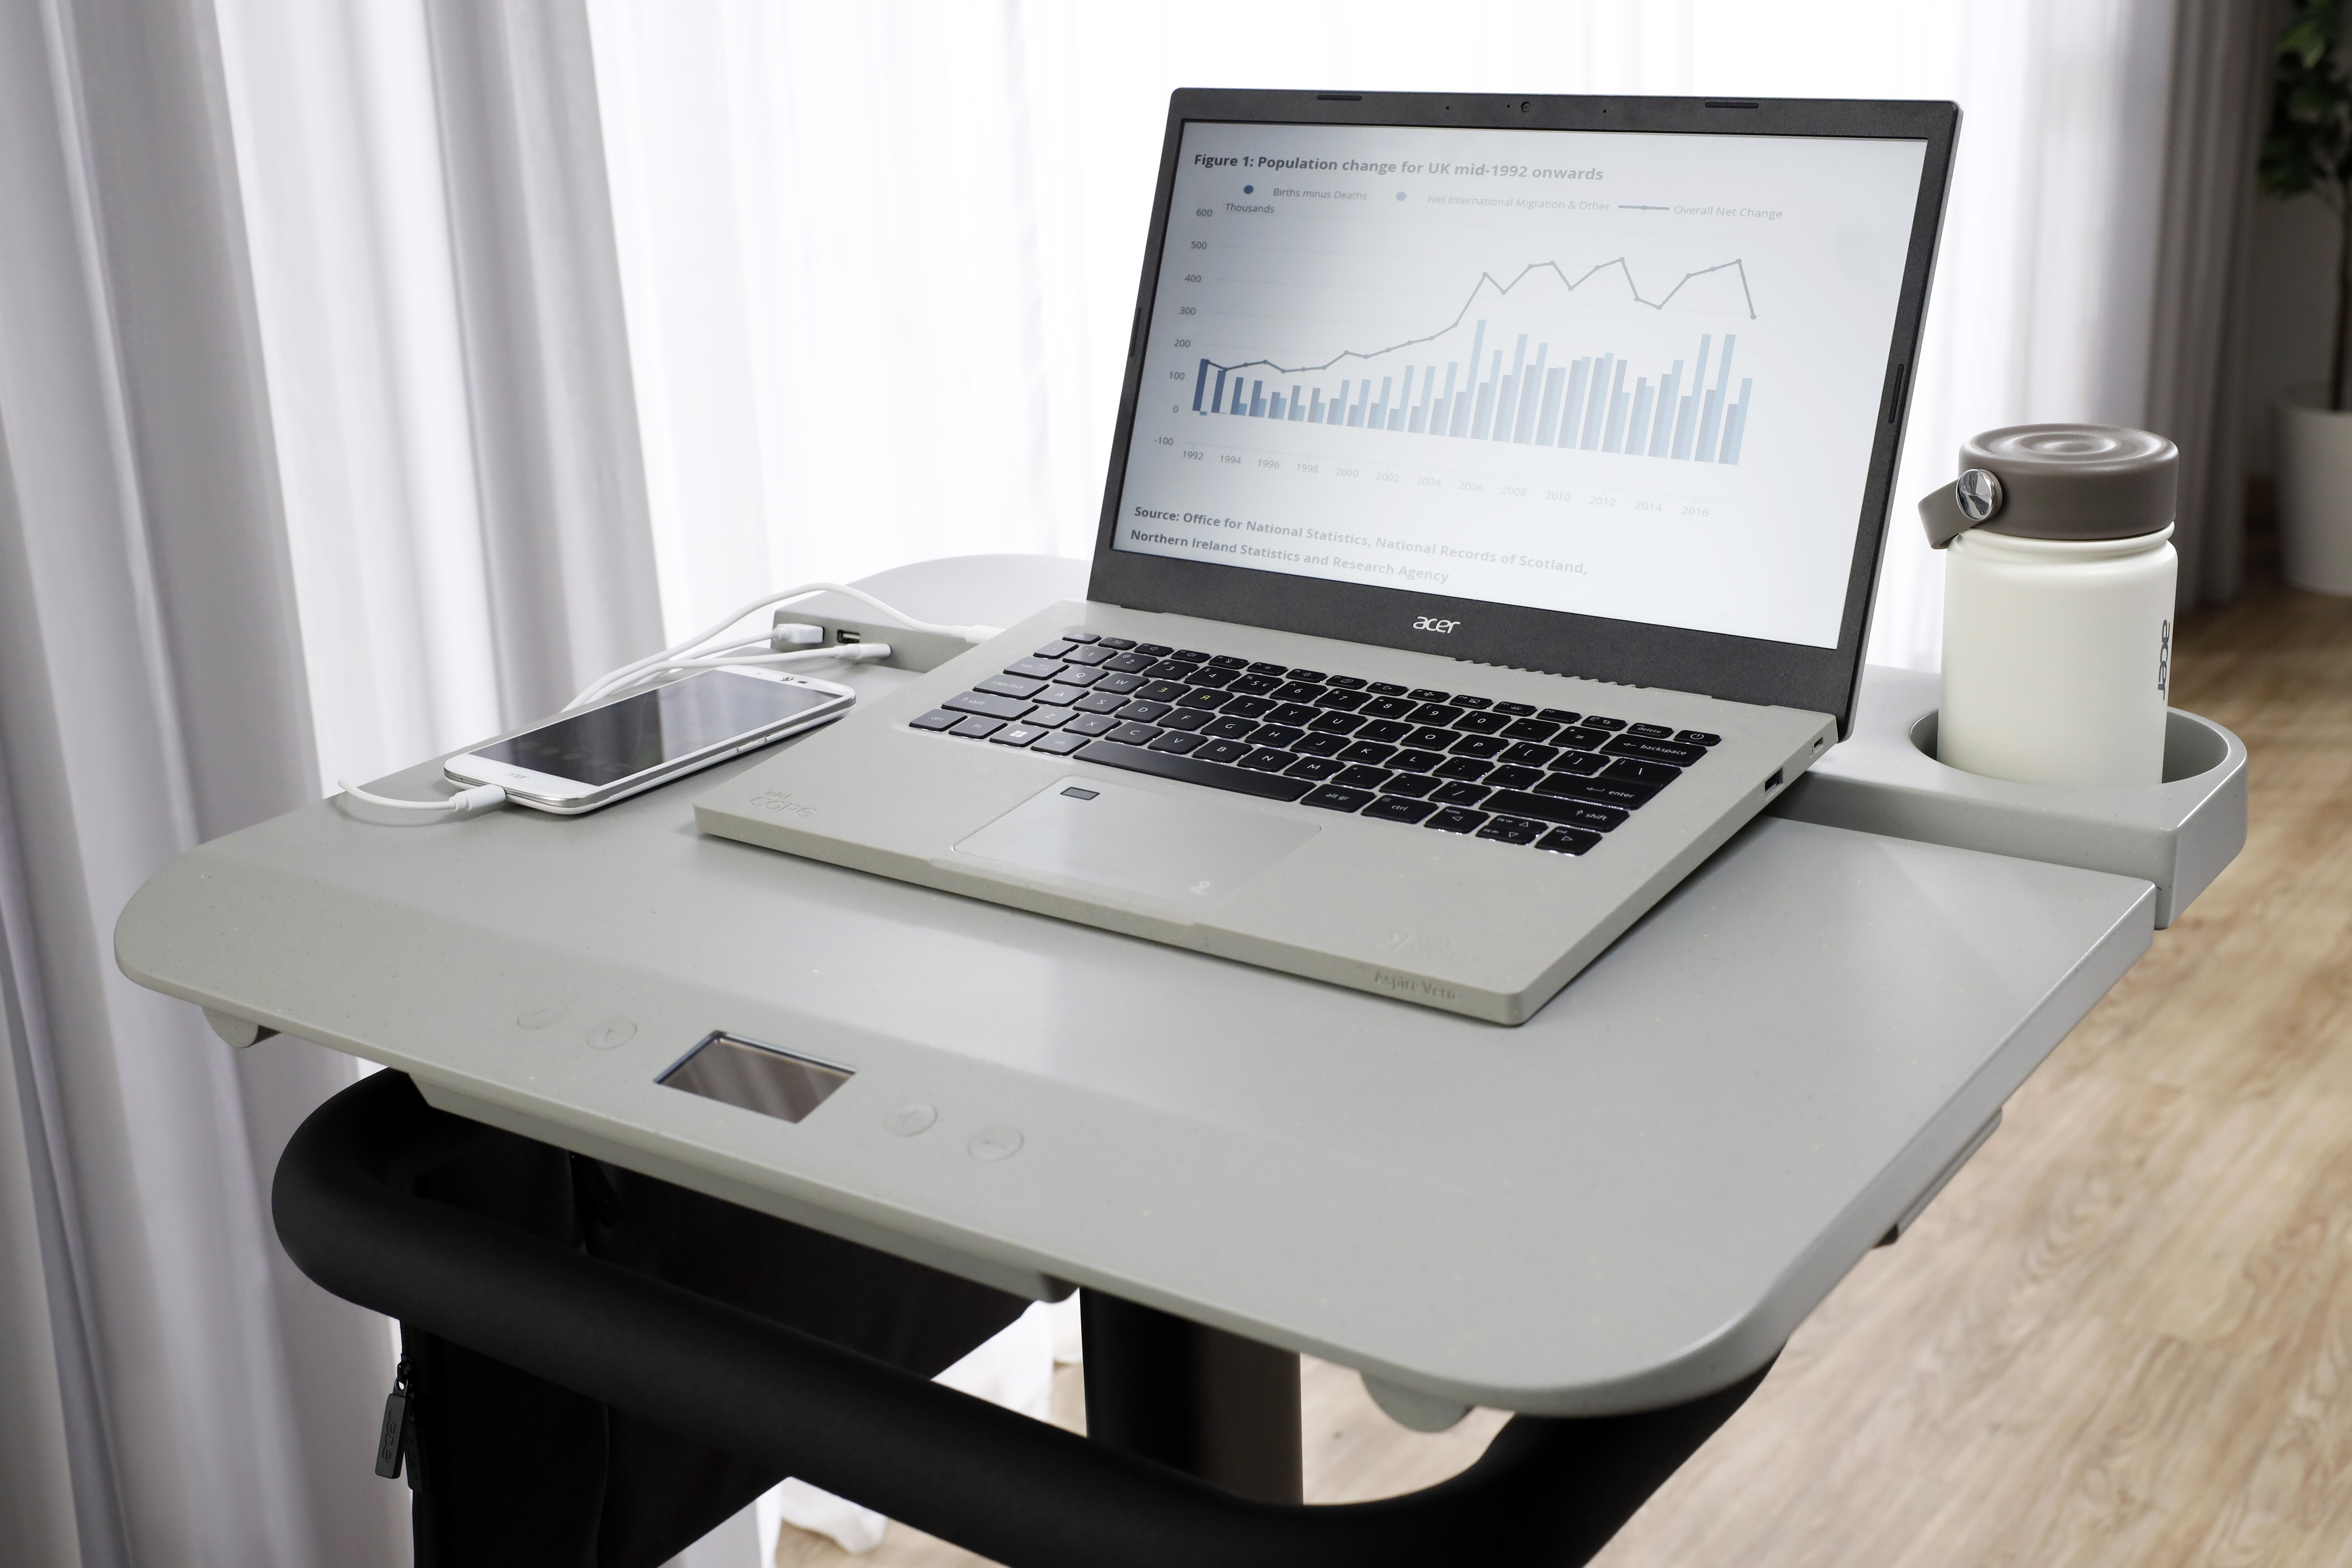 El nuevo equipo de Acer permite usar el escritorio y generar energía. (Foto: news.acer.com)